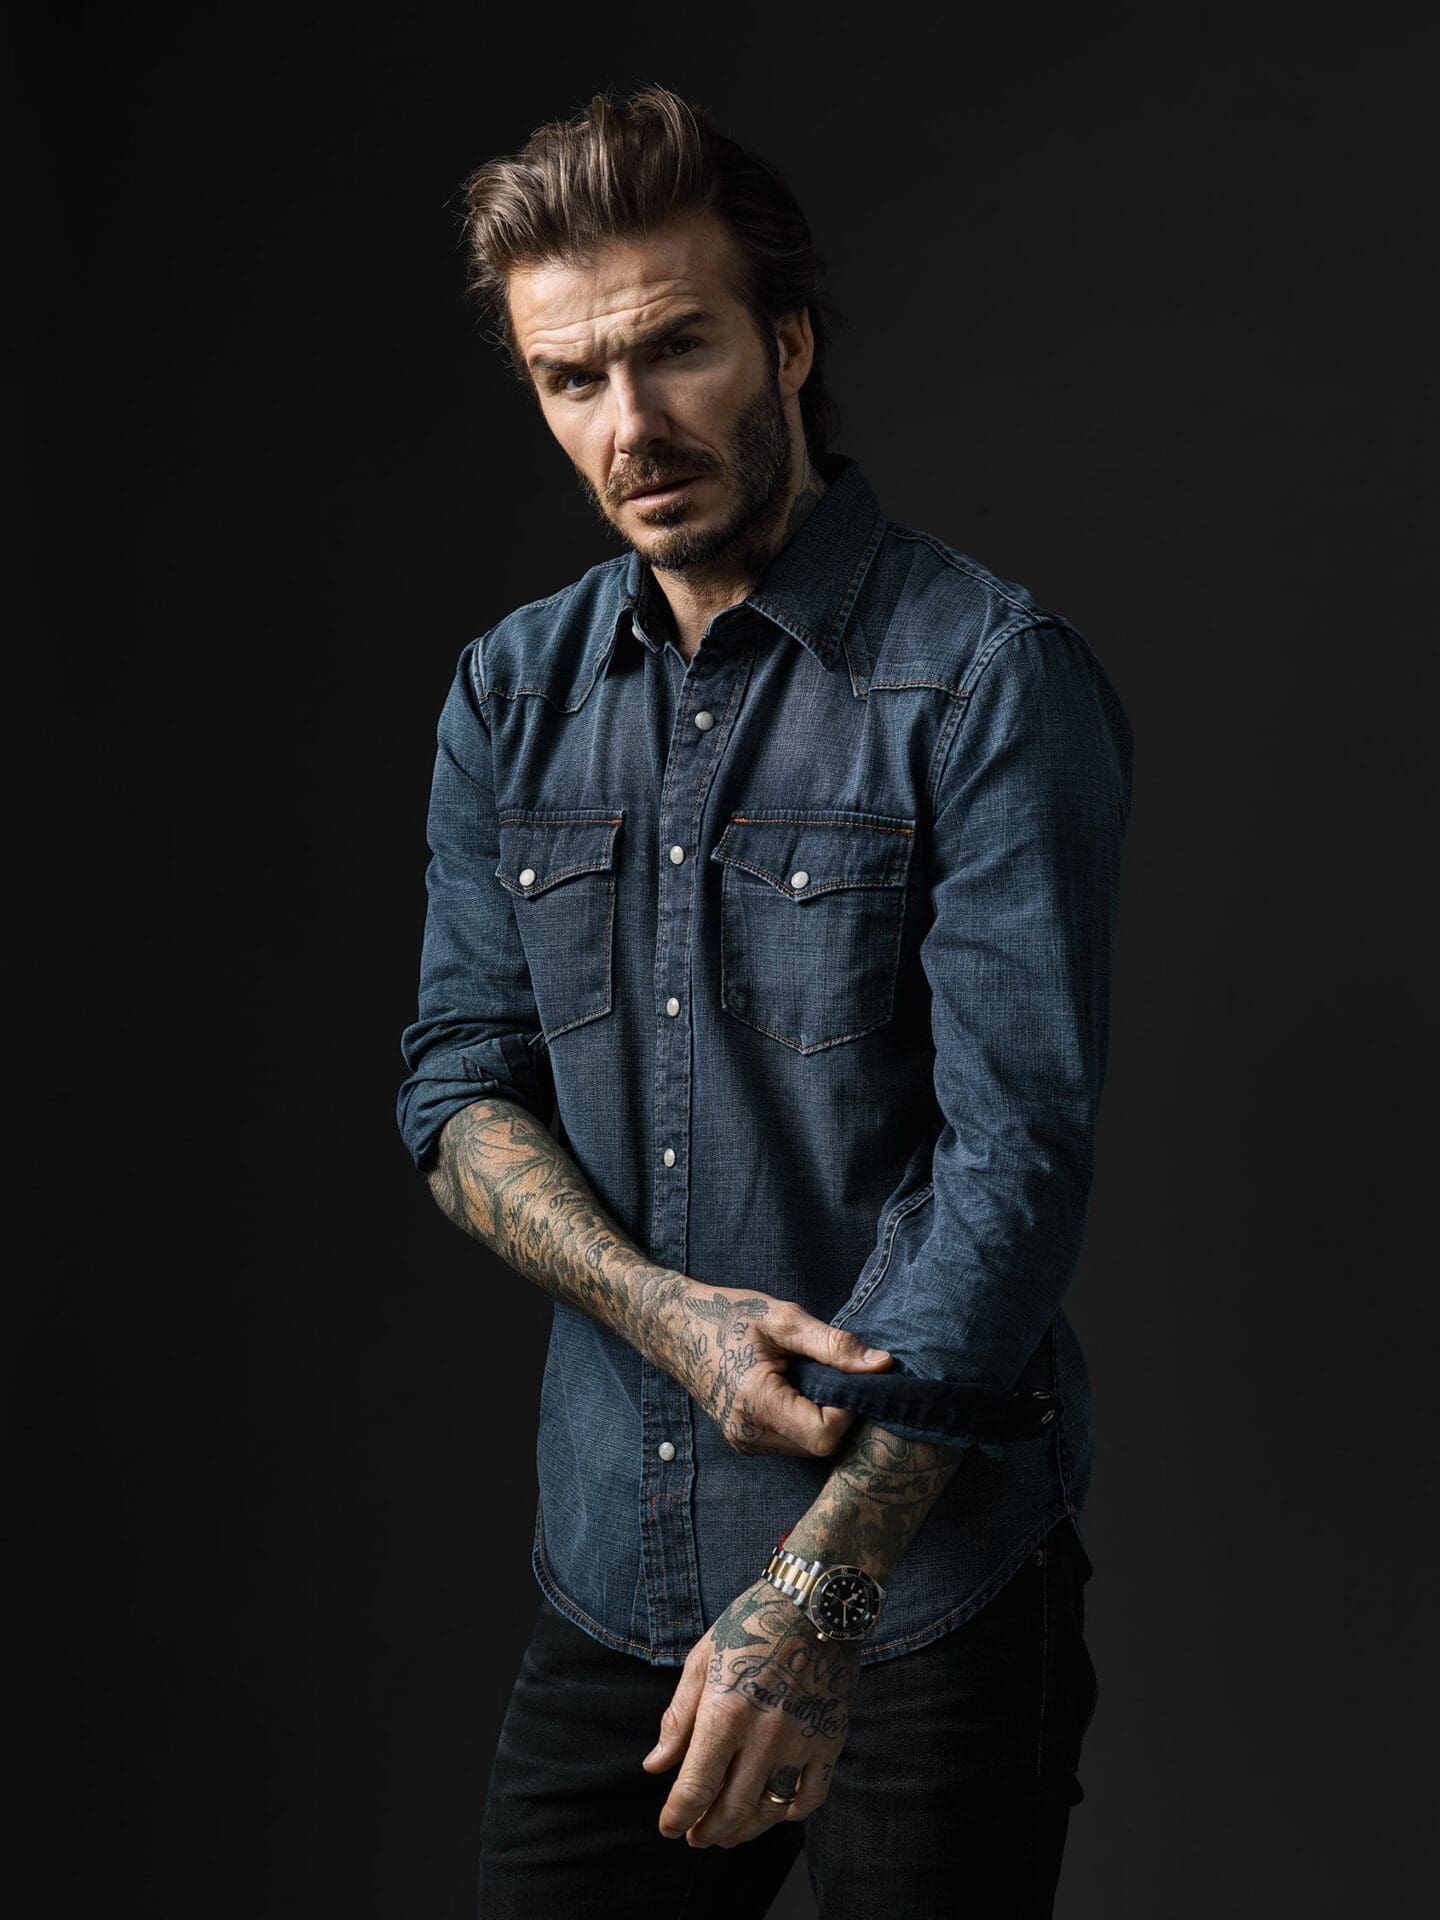 NEWS: Tudor announces David Beckham as new brand ambassador